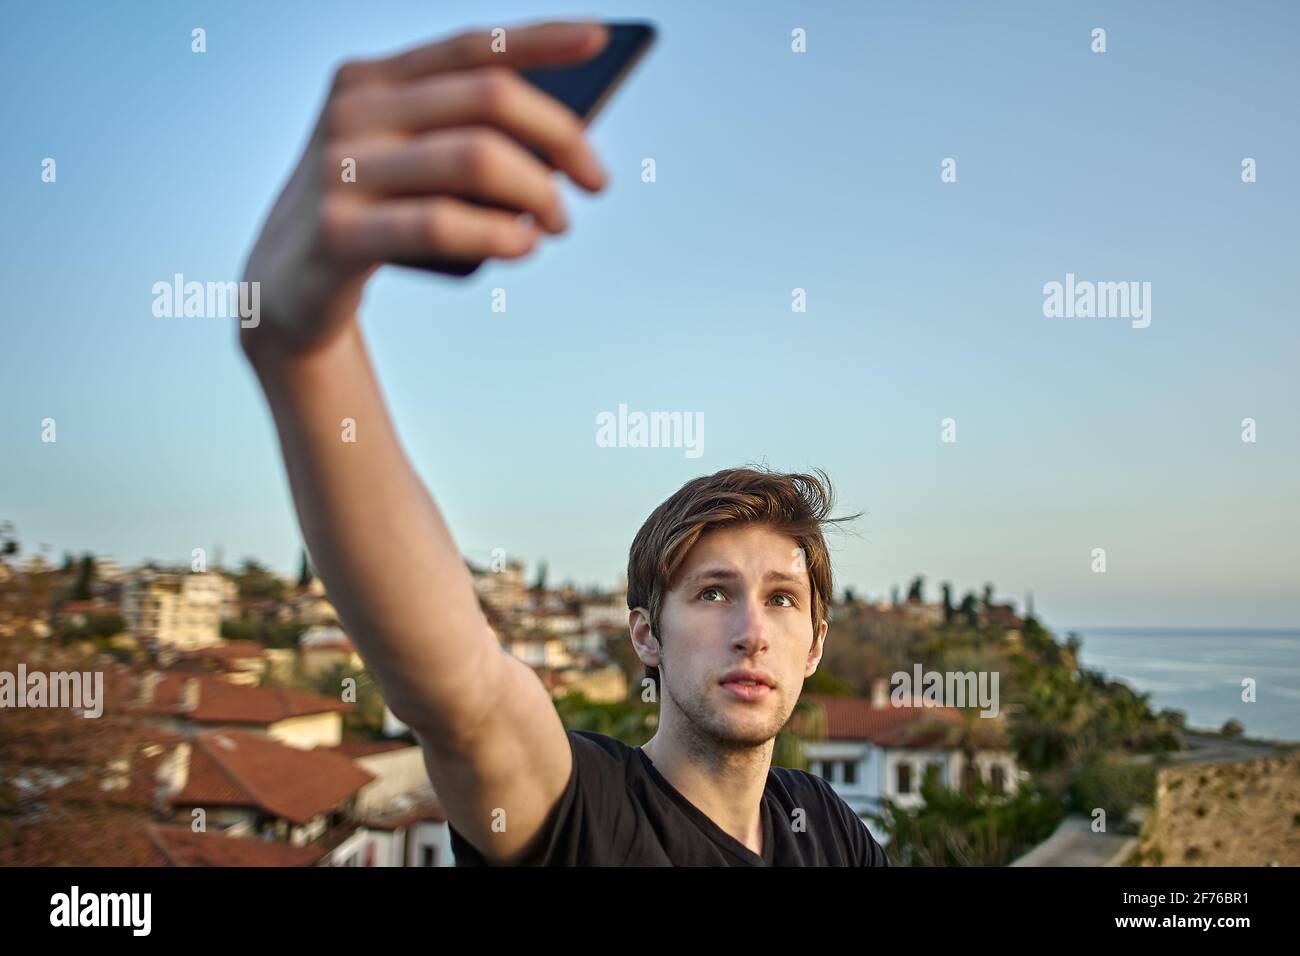 Der junge weiße Mann fotografiert sich mit dem Smartphone vor der Kulisse einer Altstadt von Antalya. Stockfoto